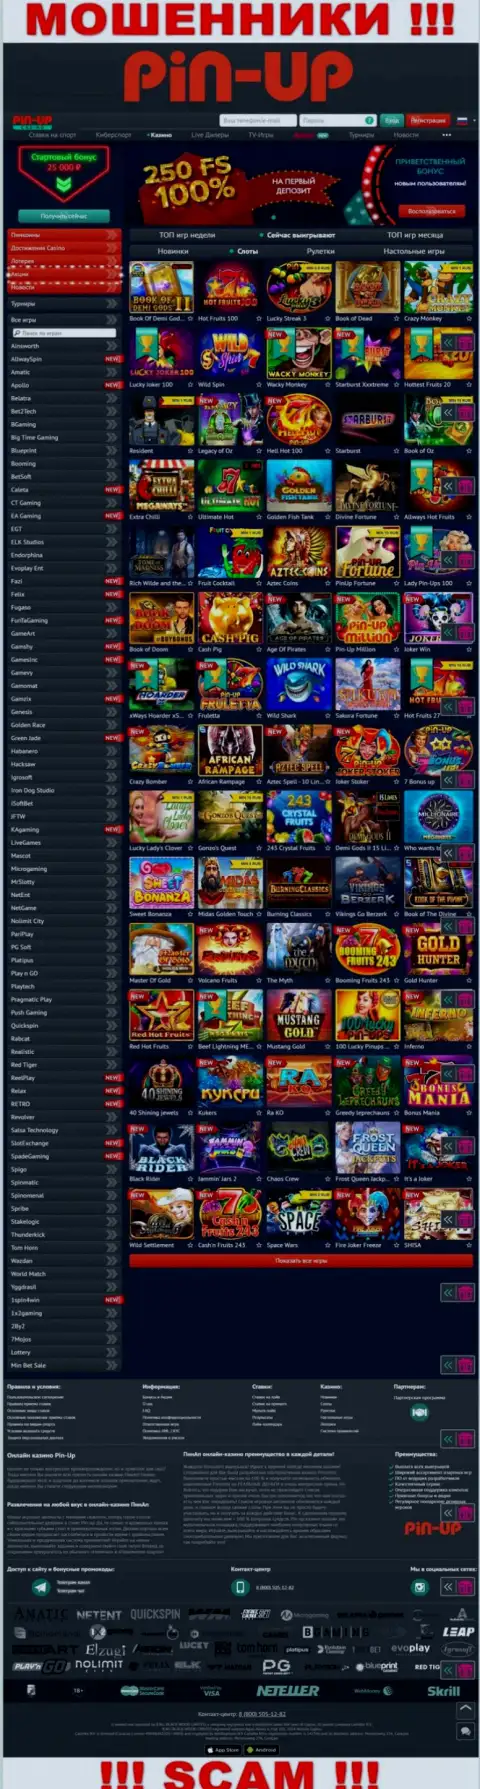 Pin-Up Casino - это официальный онлайн-ресурс мошенников Pin-Up Casino